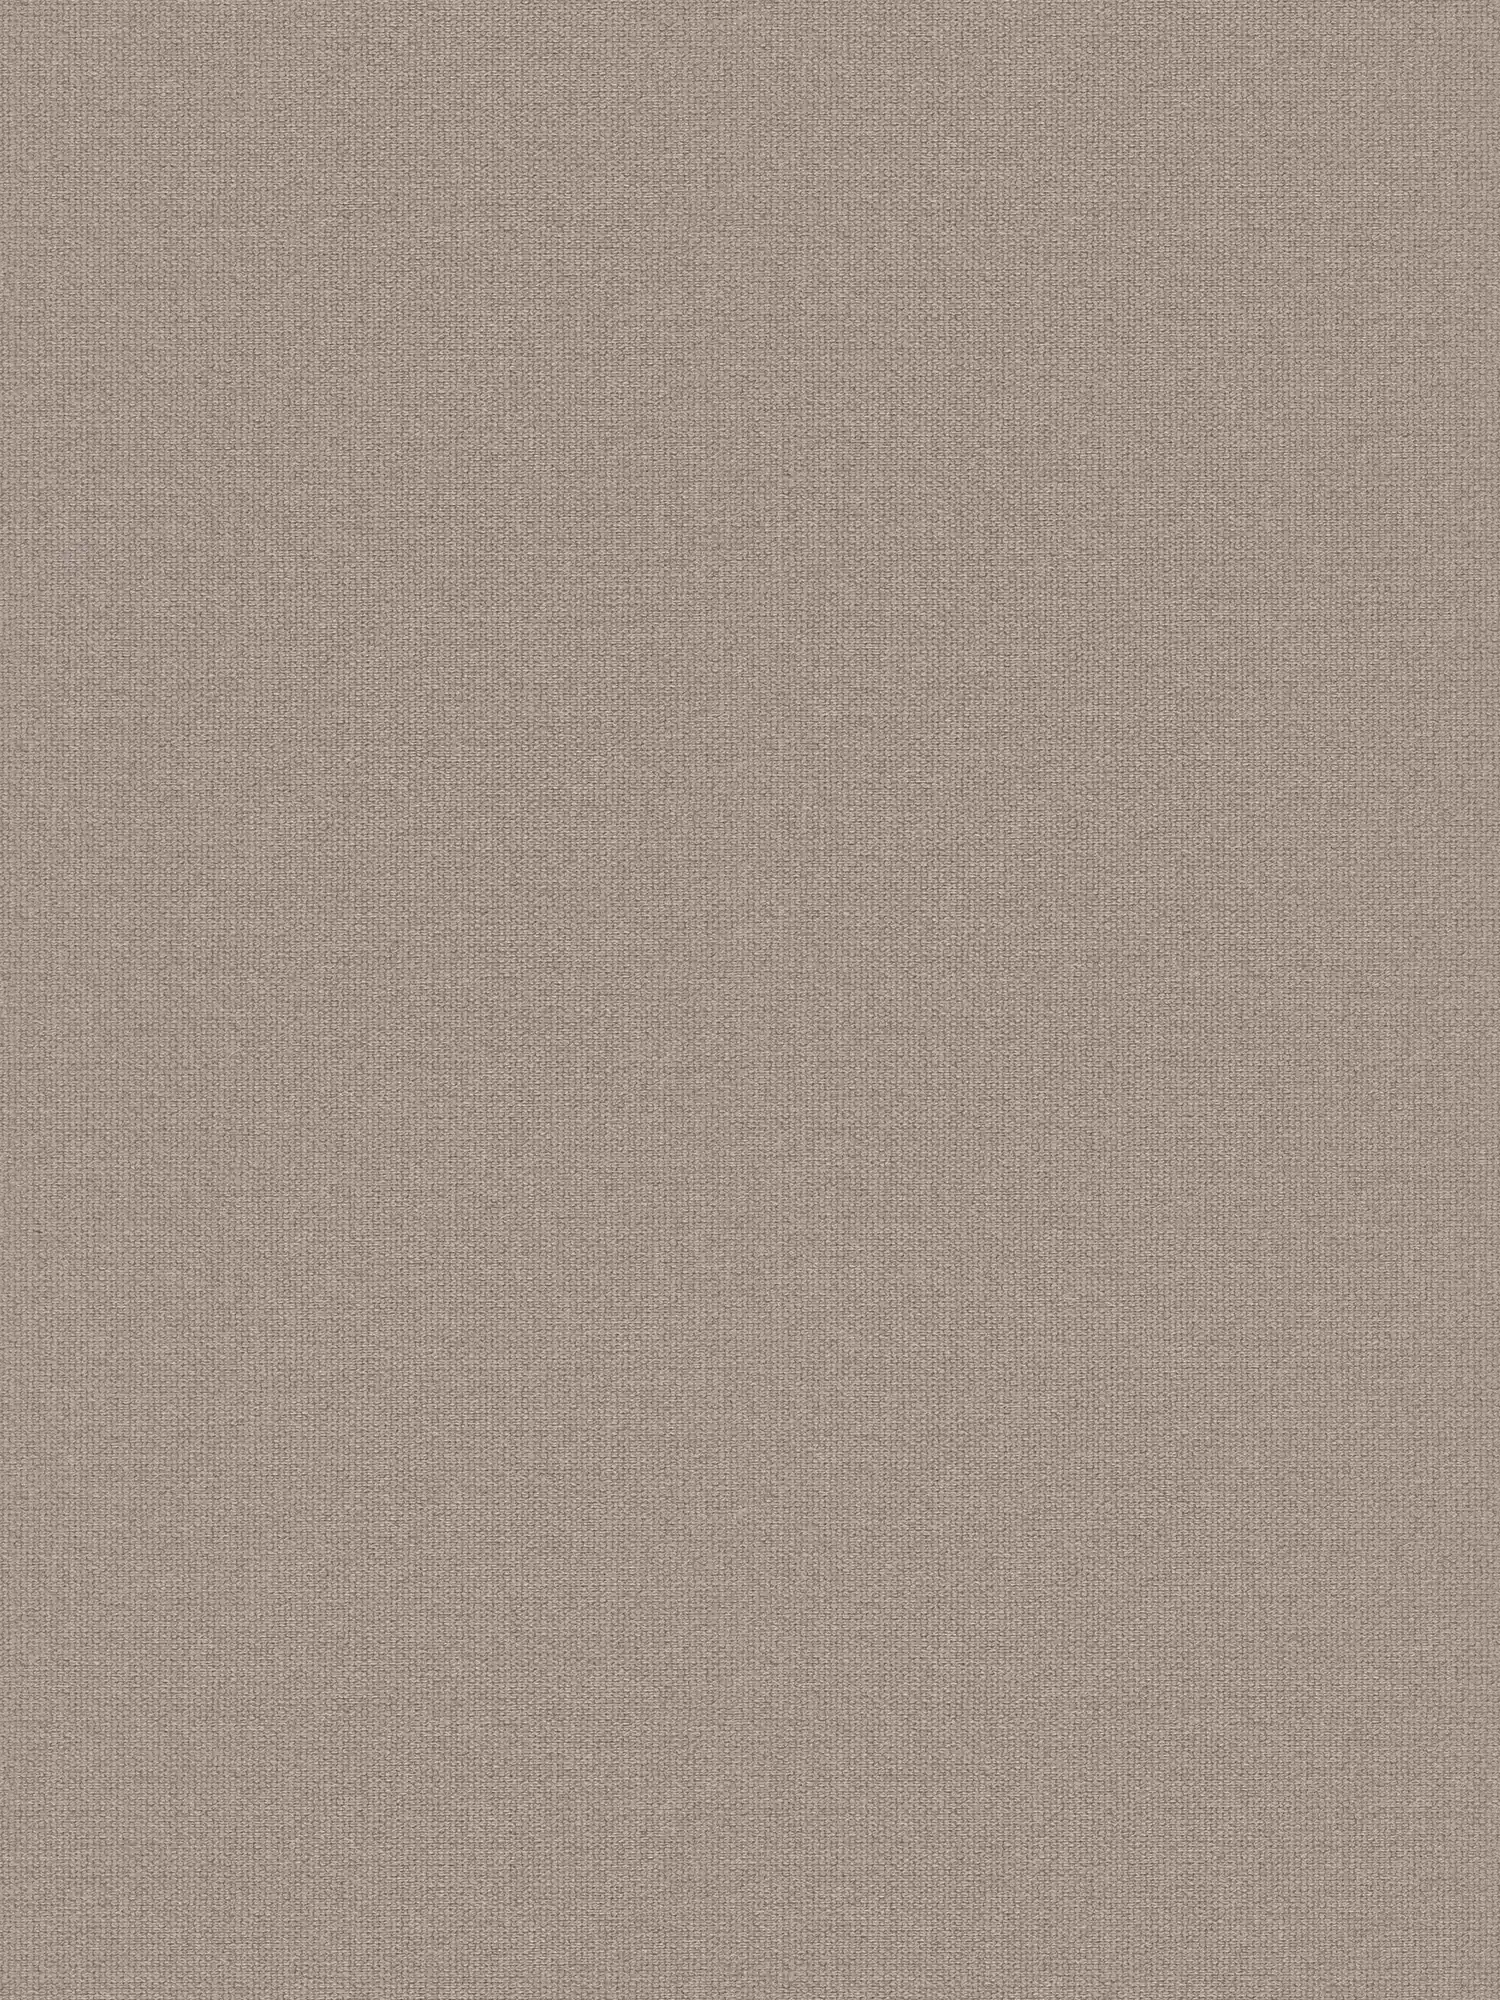 Papier peint aspect lin avec détails structurés, uni - gris, beige
